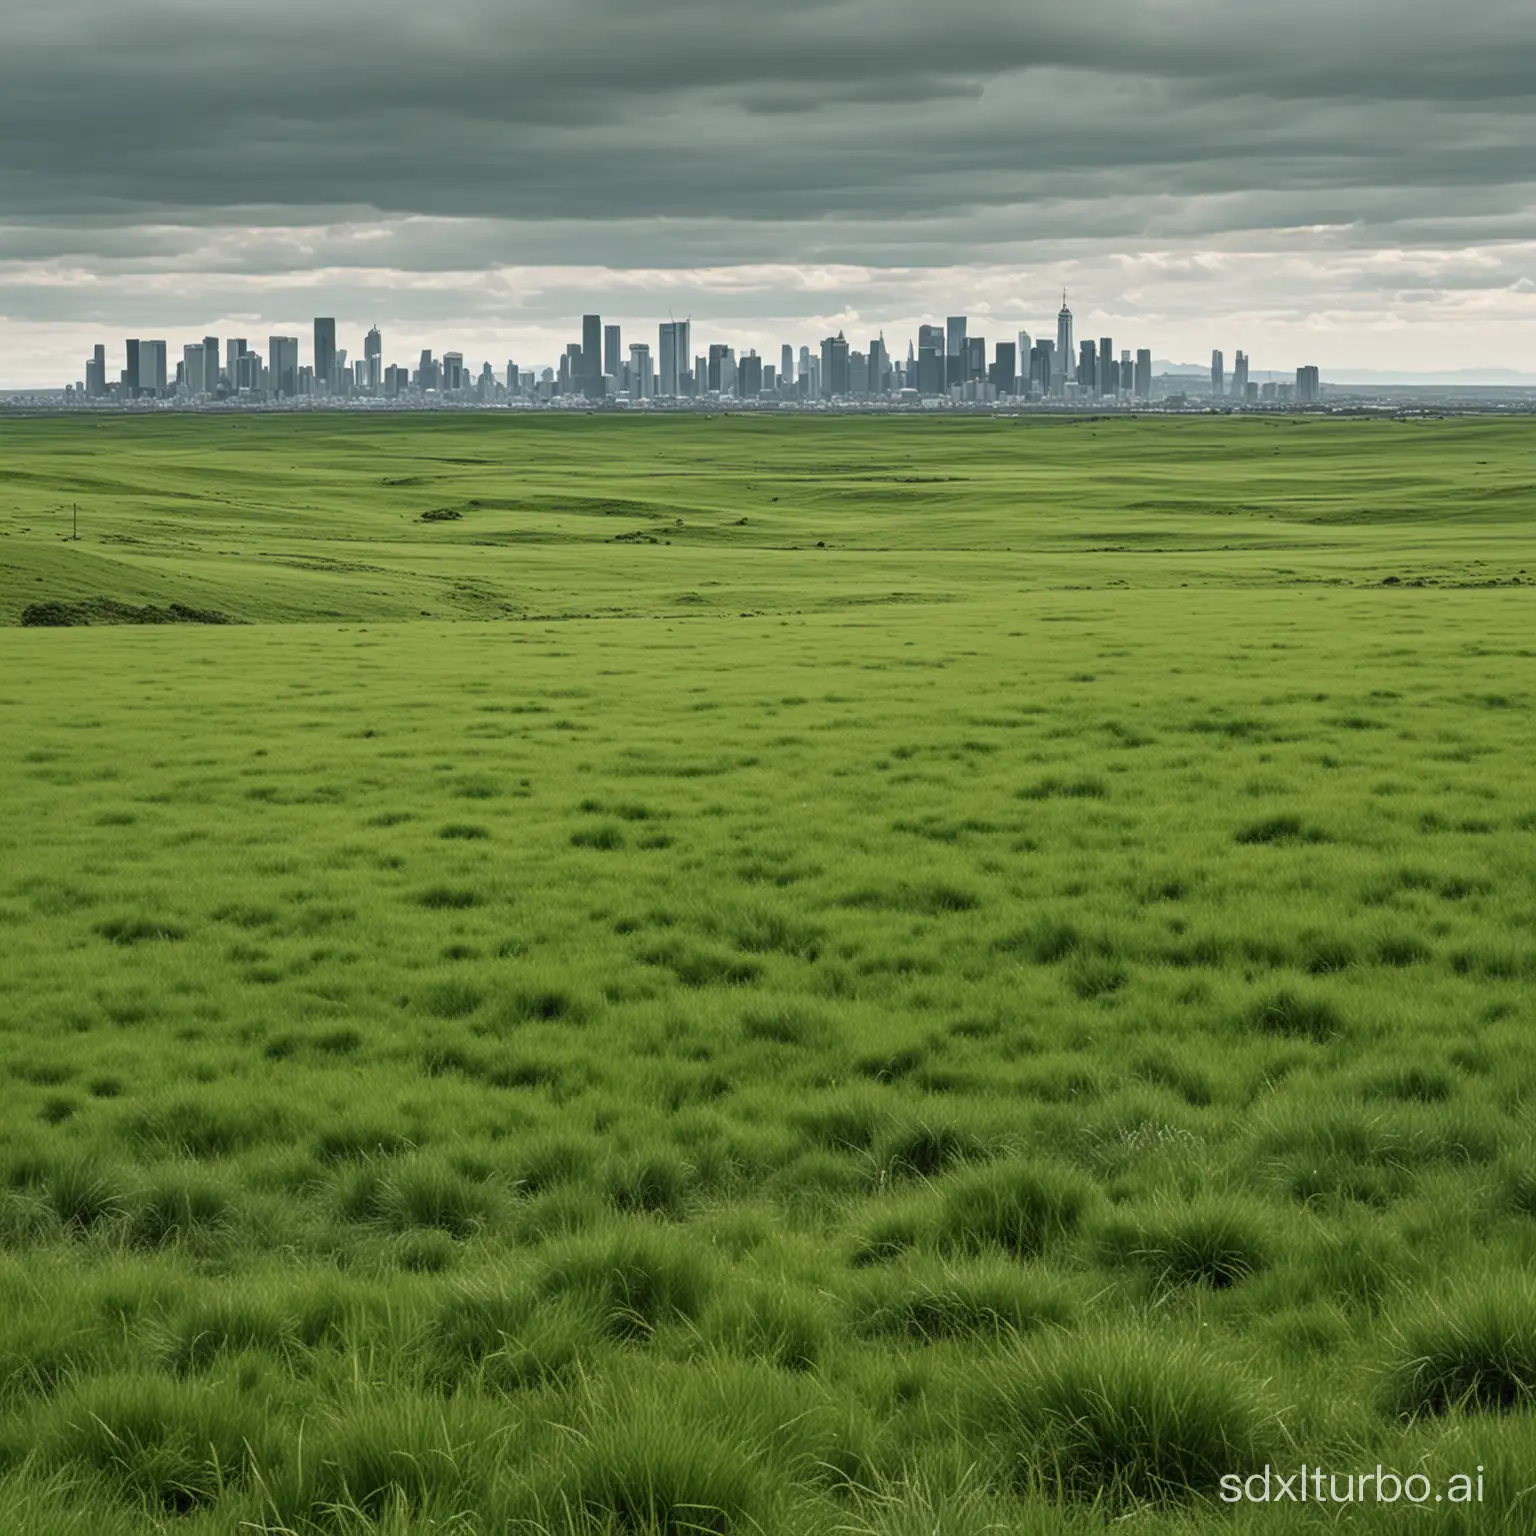 前面是绿色充满生机的草原远处是繁华的城市轮廓，画面近大远小